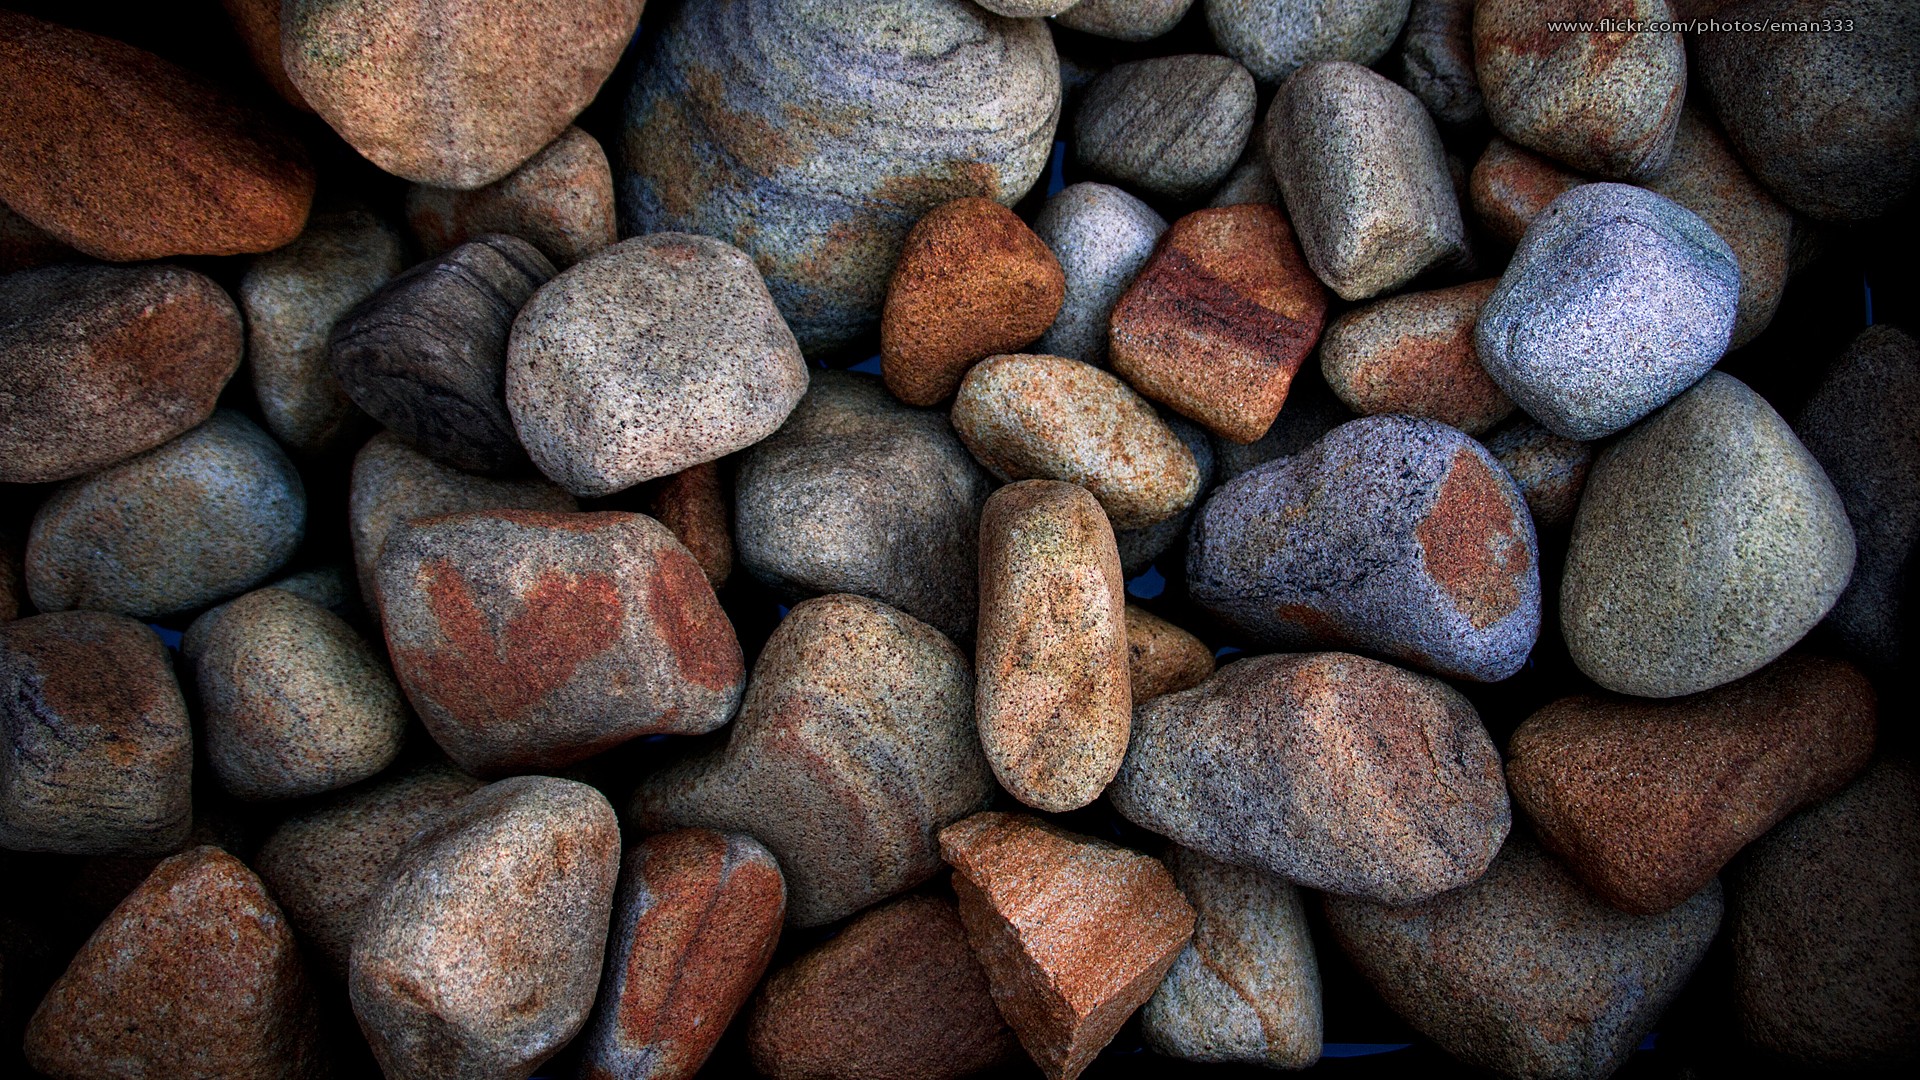 General 1920x1080 stones macro colorful